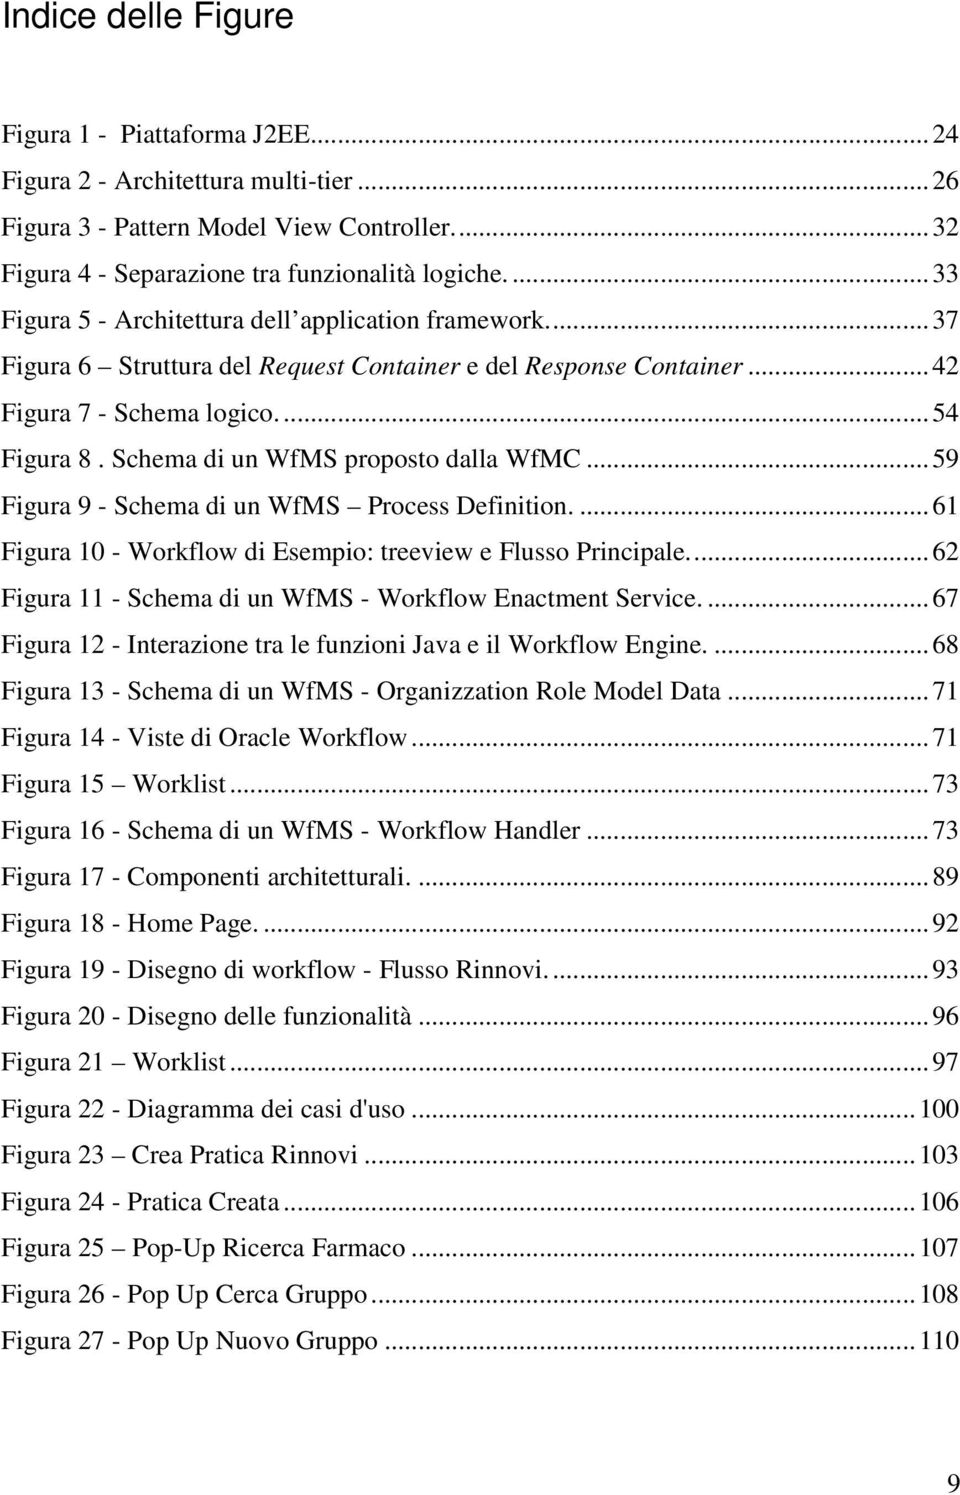 Schema di un WfMS proposto dalla WfMC...59 Figura 9 - Schema di un WfMS Process Definition....61 Figura 10 - Workflow di Esempio: treeview e Flusso Principale.